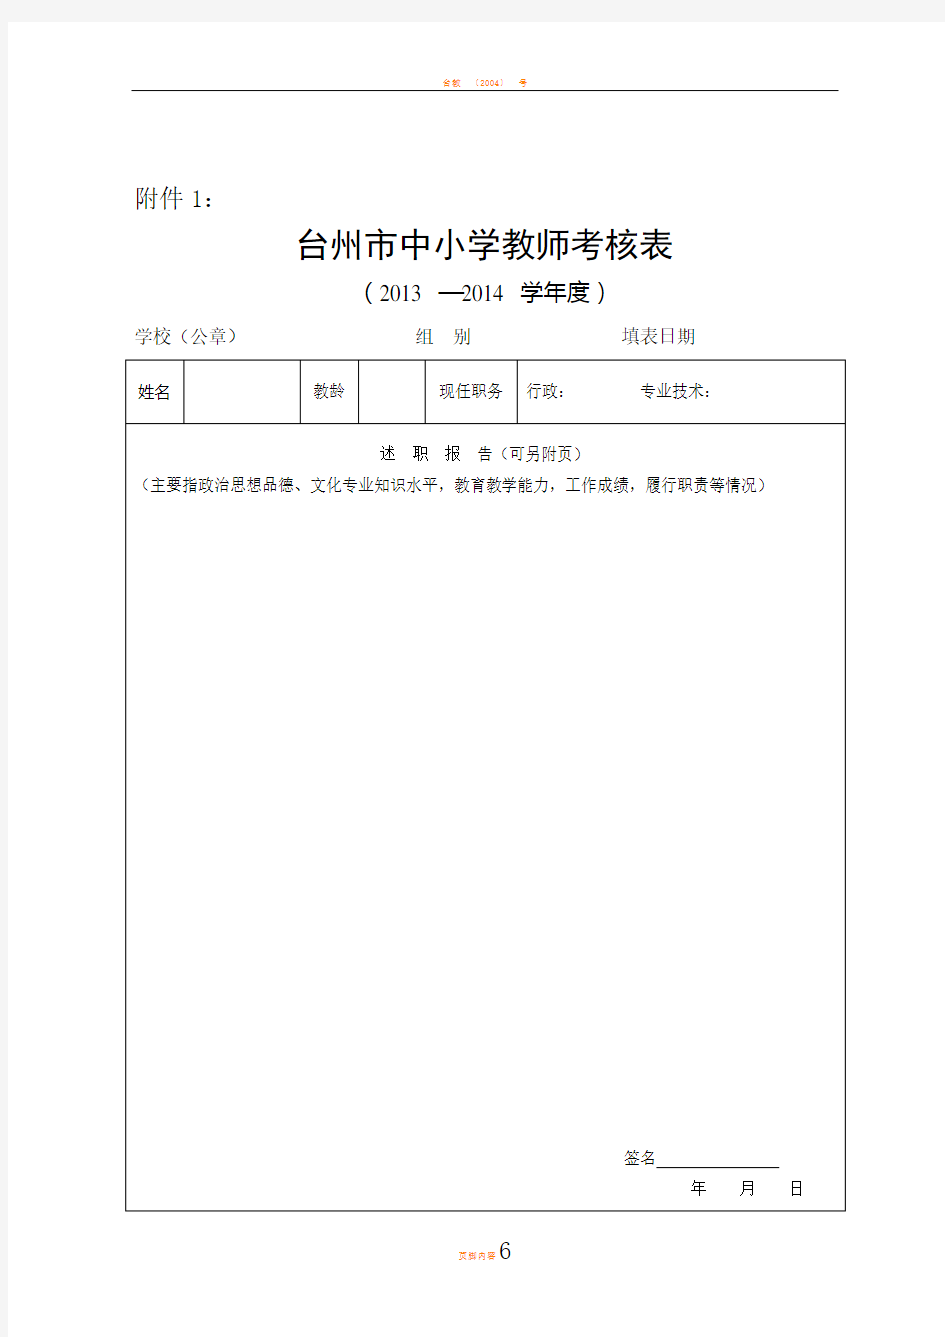 台州市中小学教师考核表(模板)